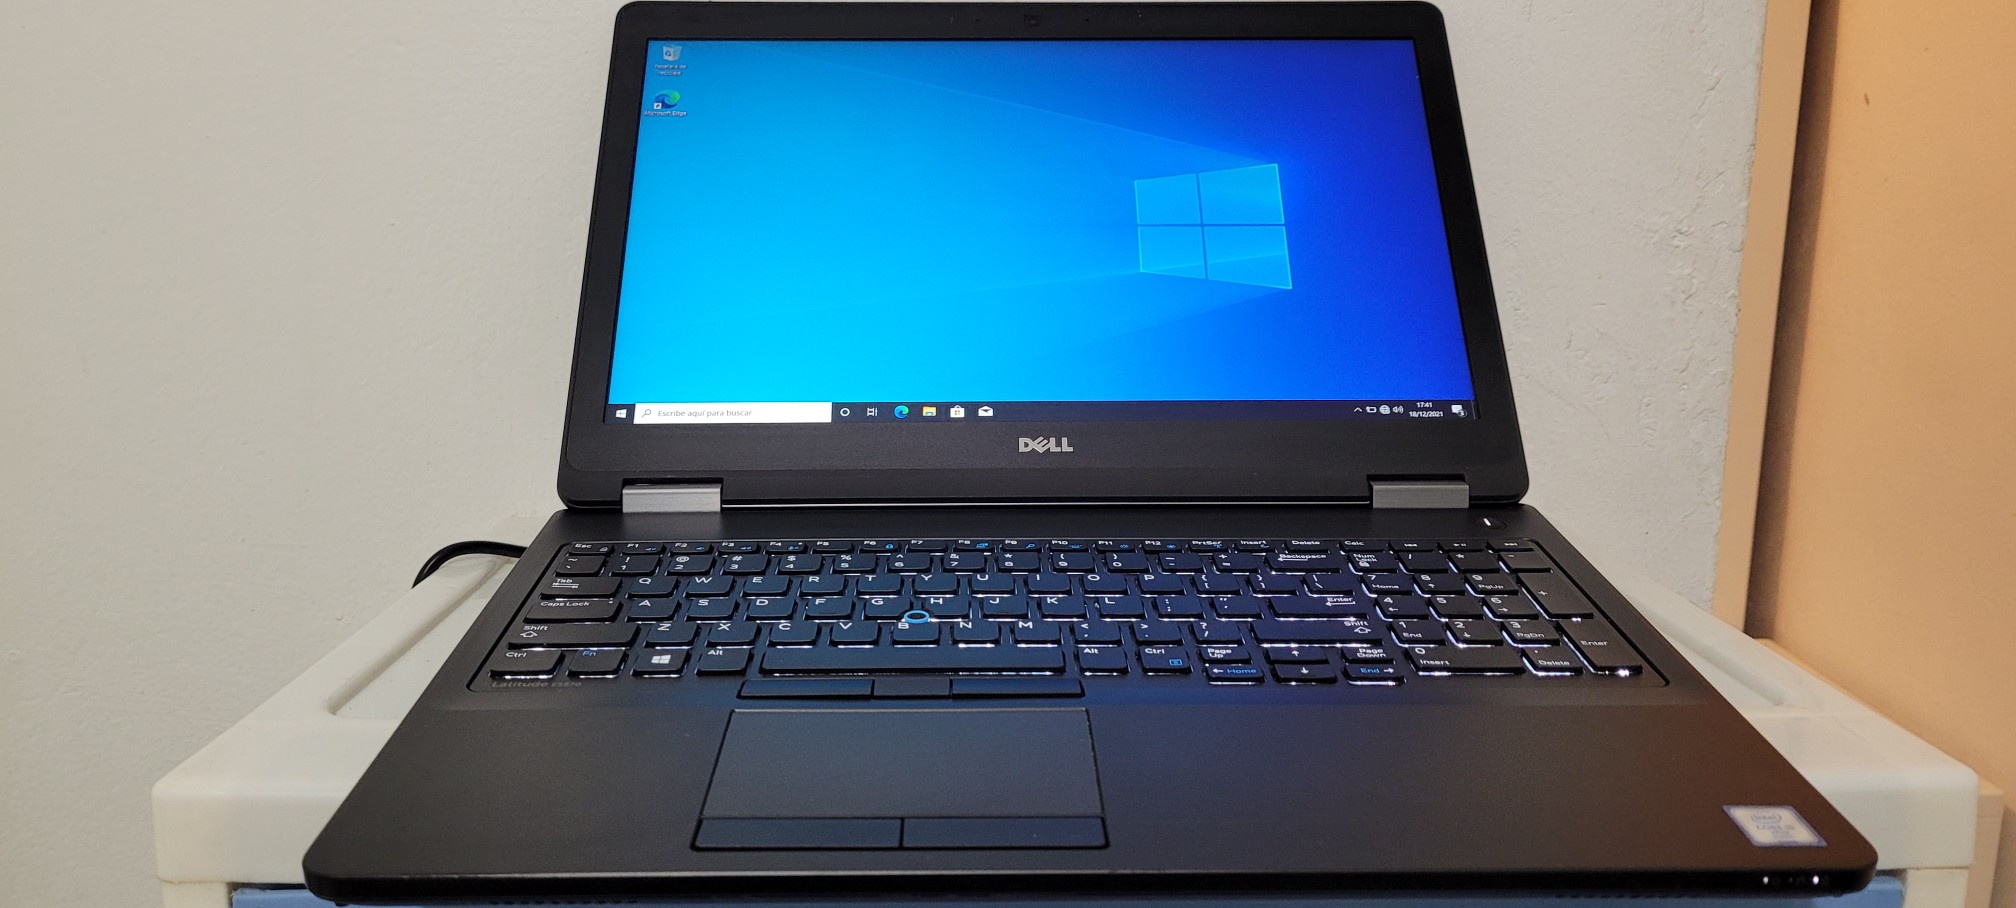 computadoras y laptops - Dell latitude 17 Pulg Core i7 Ram 8gb Disco 1000gb hdmi 0